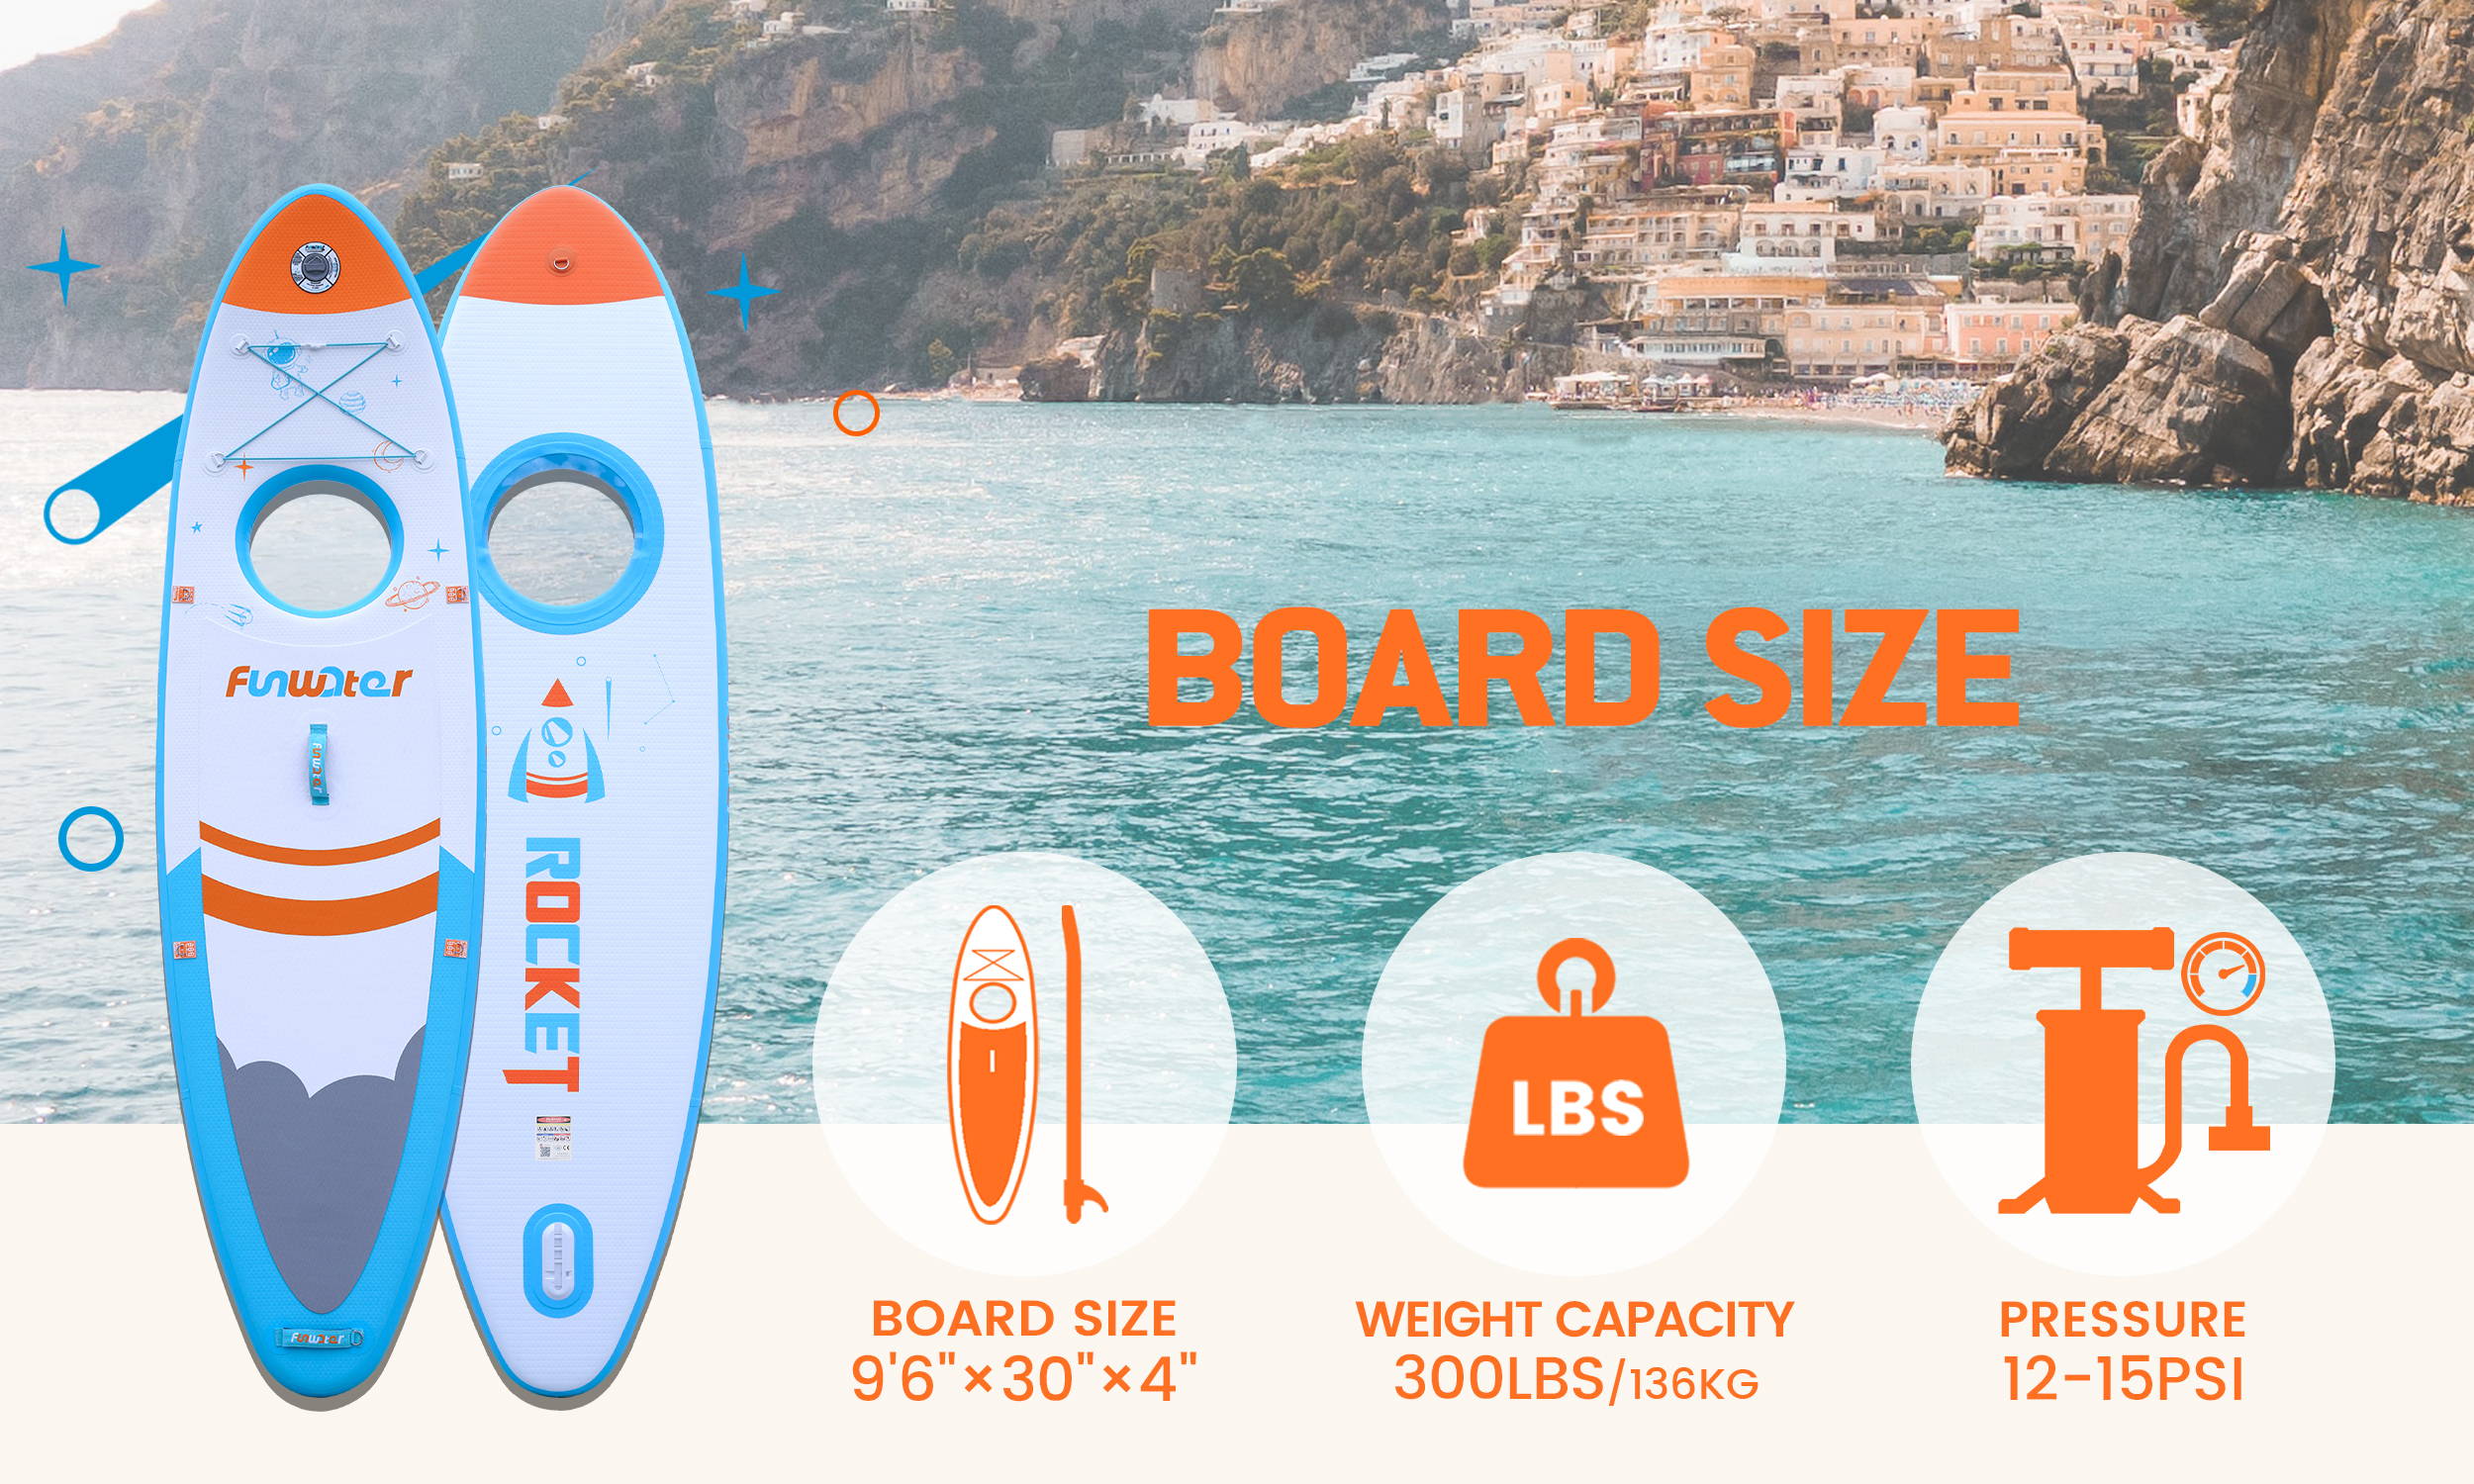 Board size